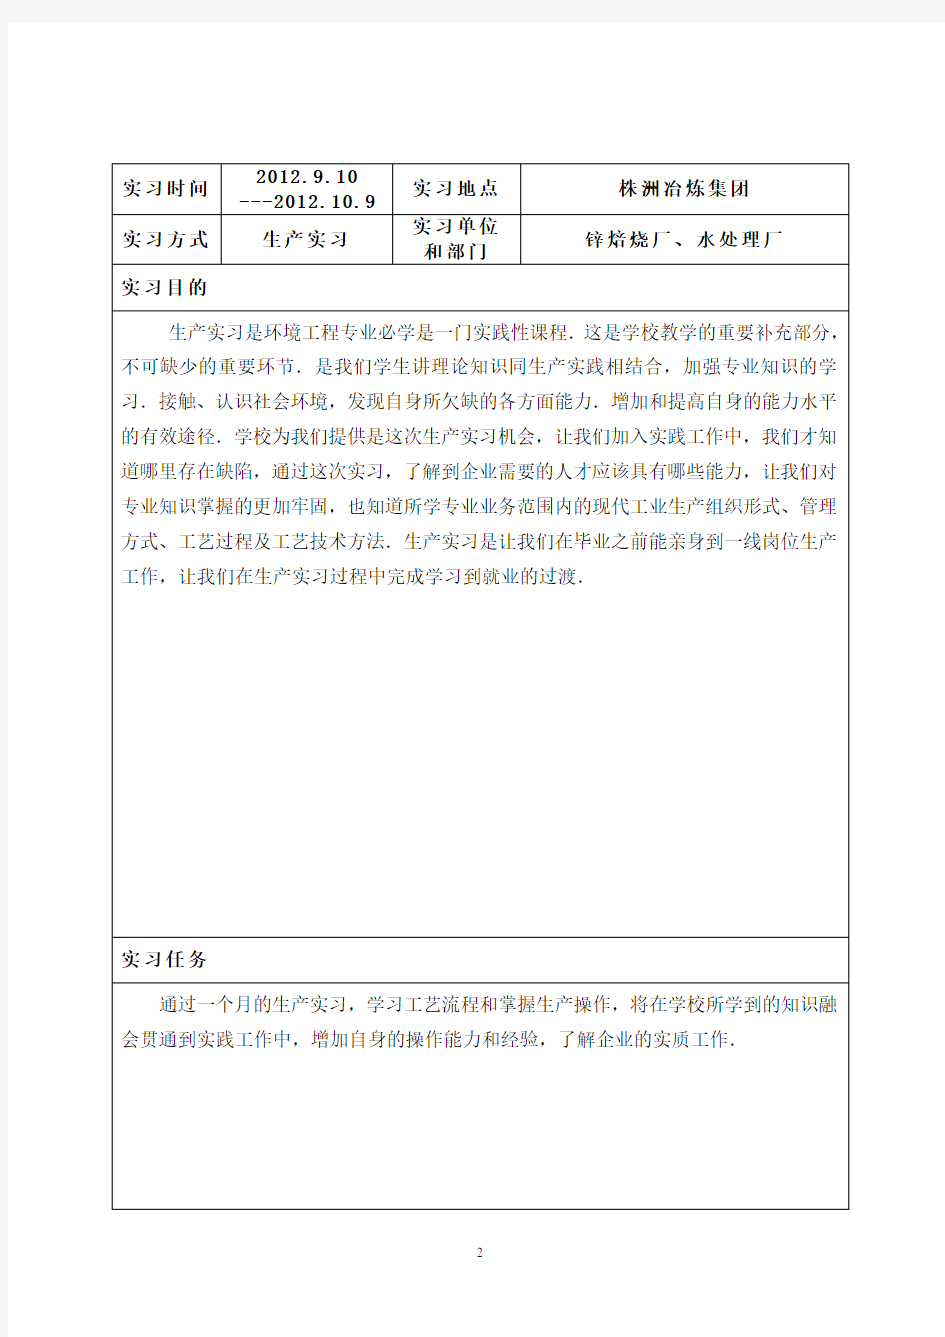 株洲冶炼集团实习报告总结_~污水处理工艺、锌厂处理 推荐